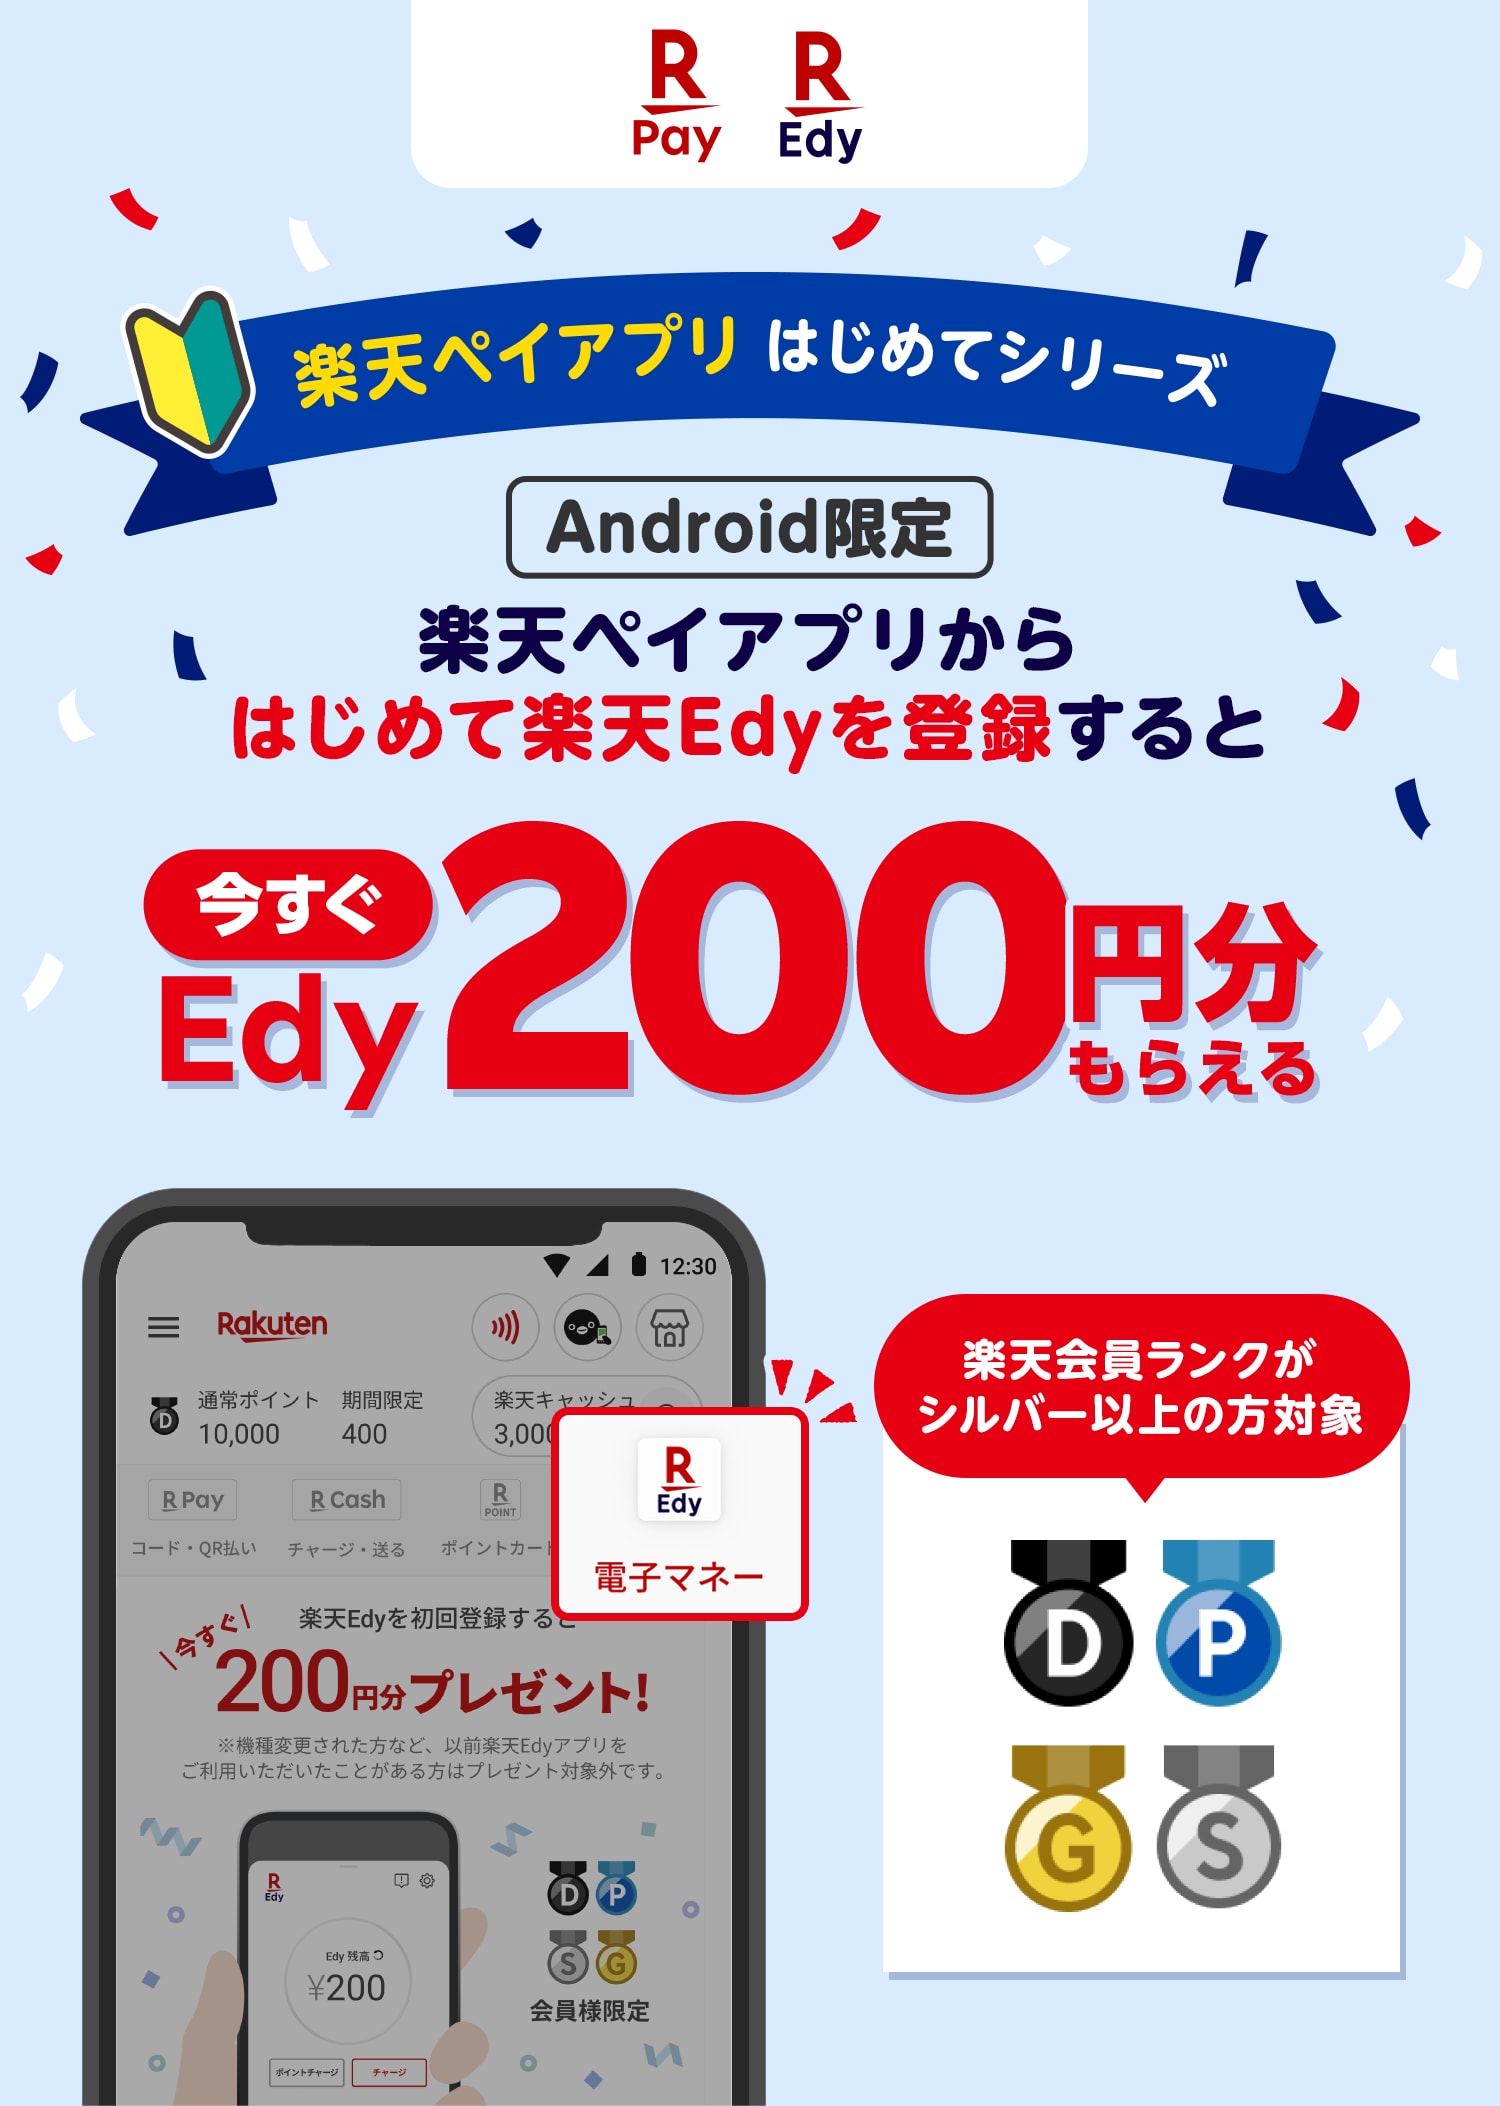 【楽天ペイ 楽天Edy】楽天ペイアプリはじめてシリーズ　[Android限定]　楽天ペイアプリからはじめて楽天Edyを登録すると今すぐEdy200円分もらえる[楽天会員ランクがシルバー以上の方対象]